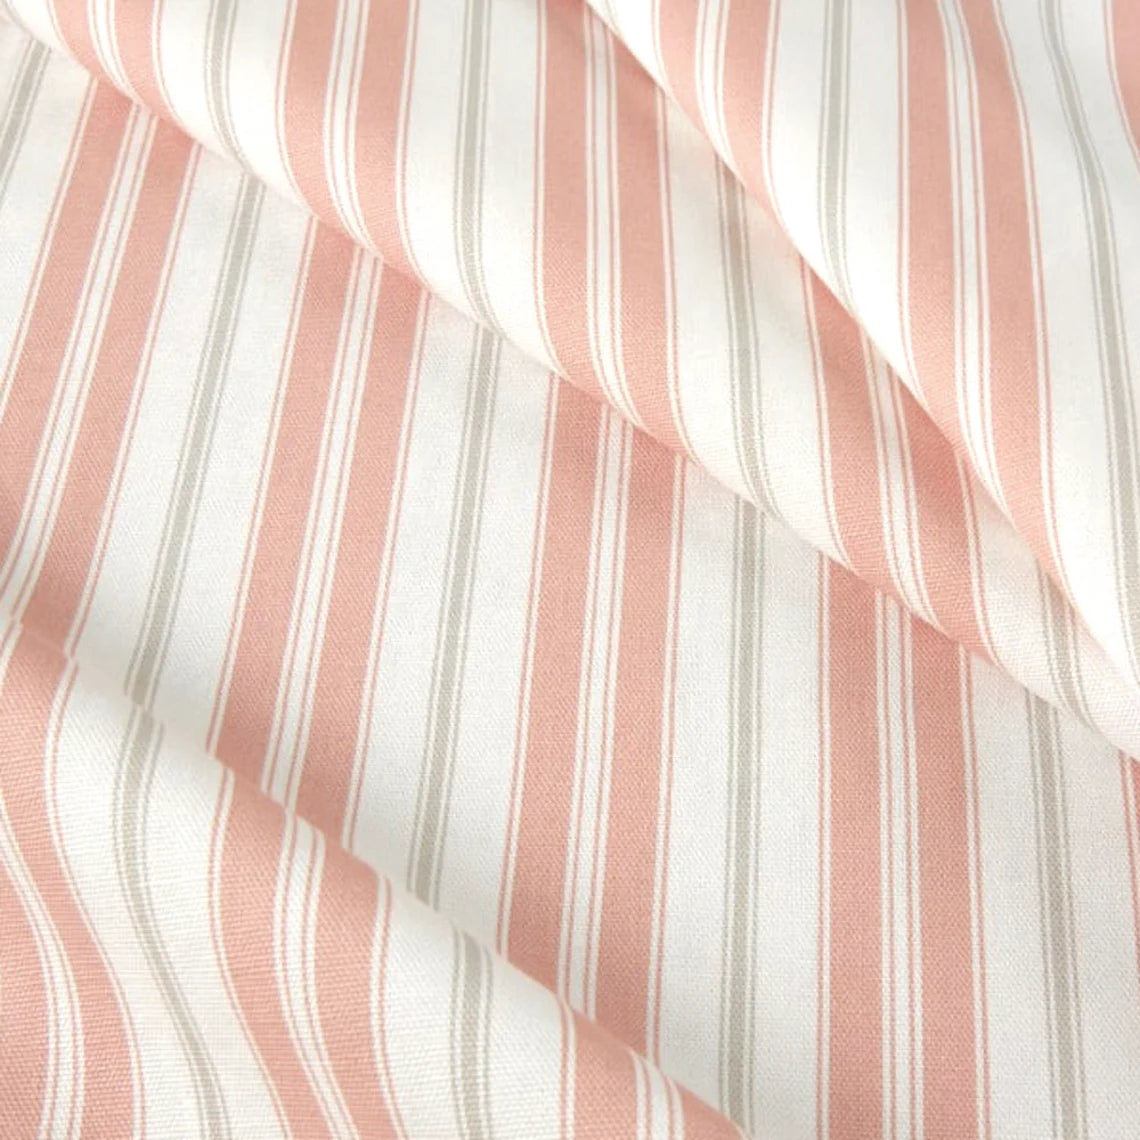 tailored crib skirt in newbury blush stripe- pink, gray, white